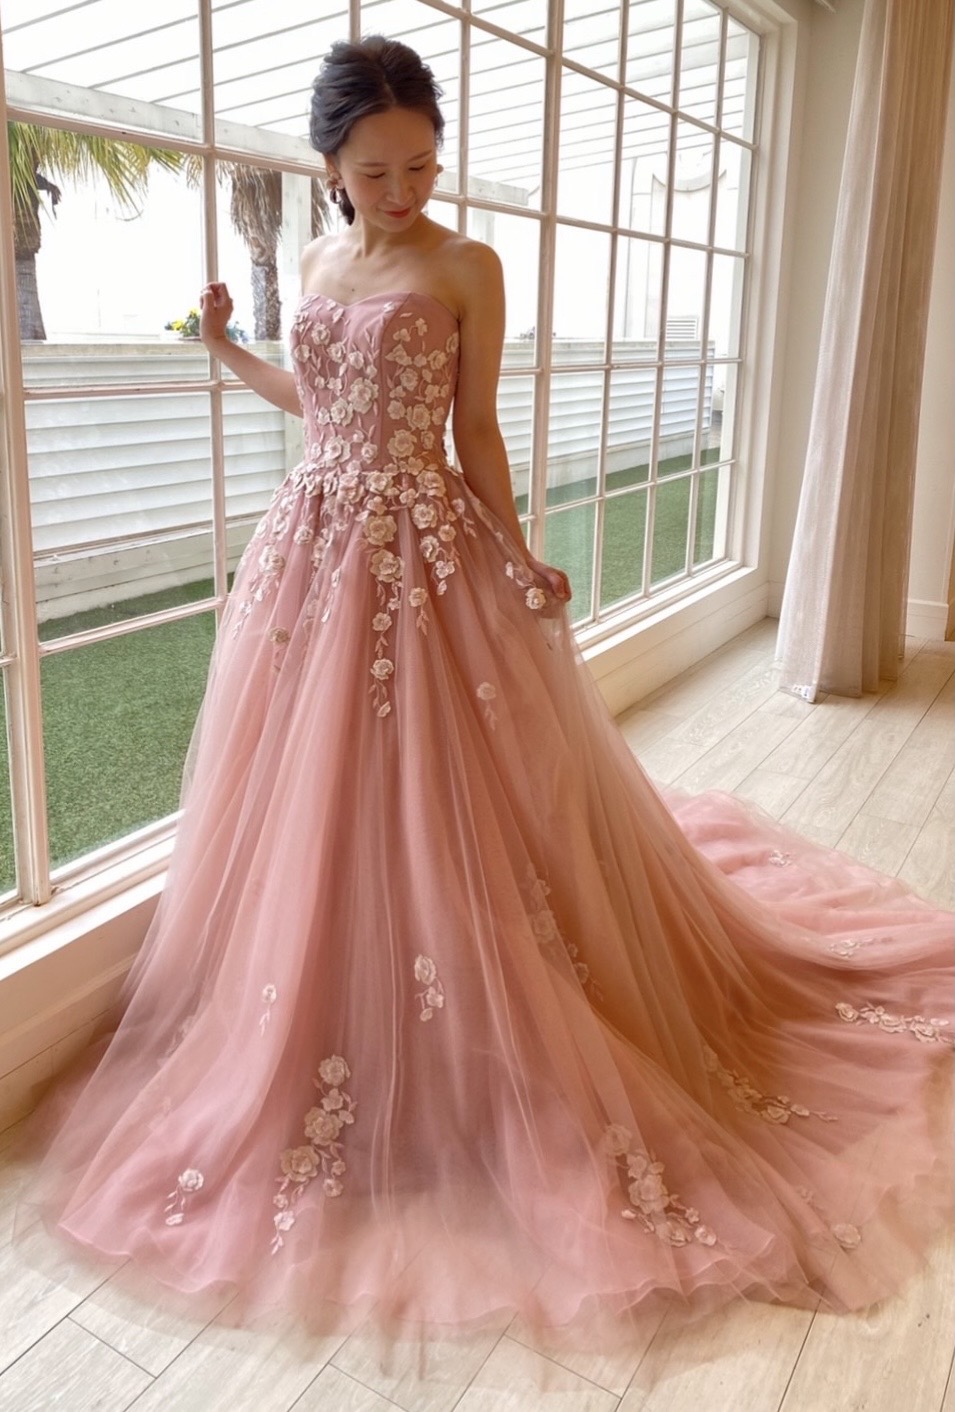 ピンクドレス